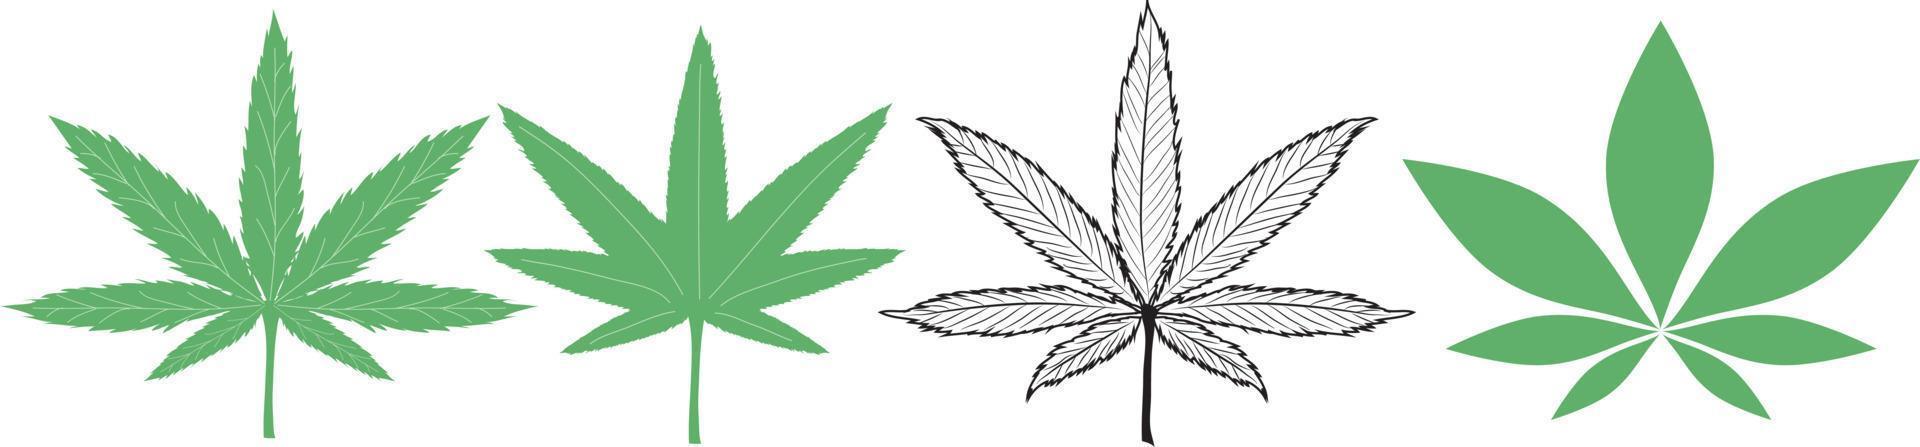 grüne Cannabisblätter isoliert auf weißem Hintergrund., Marihuana- oder Hanfsymbol, medizinisches Zeichen für Cannabis, 2D-Illustration vektor